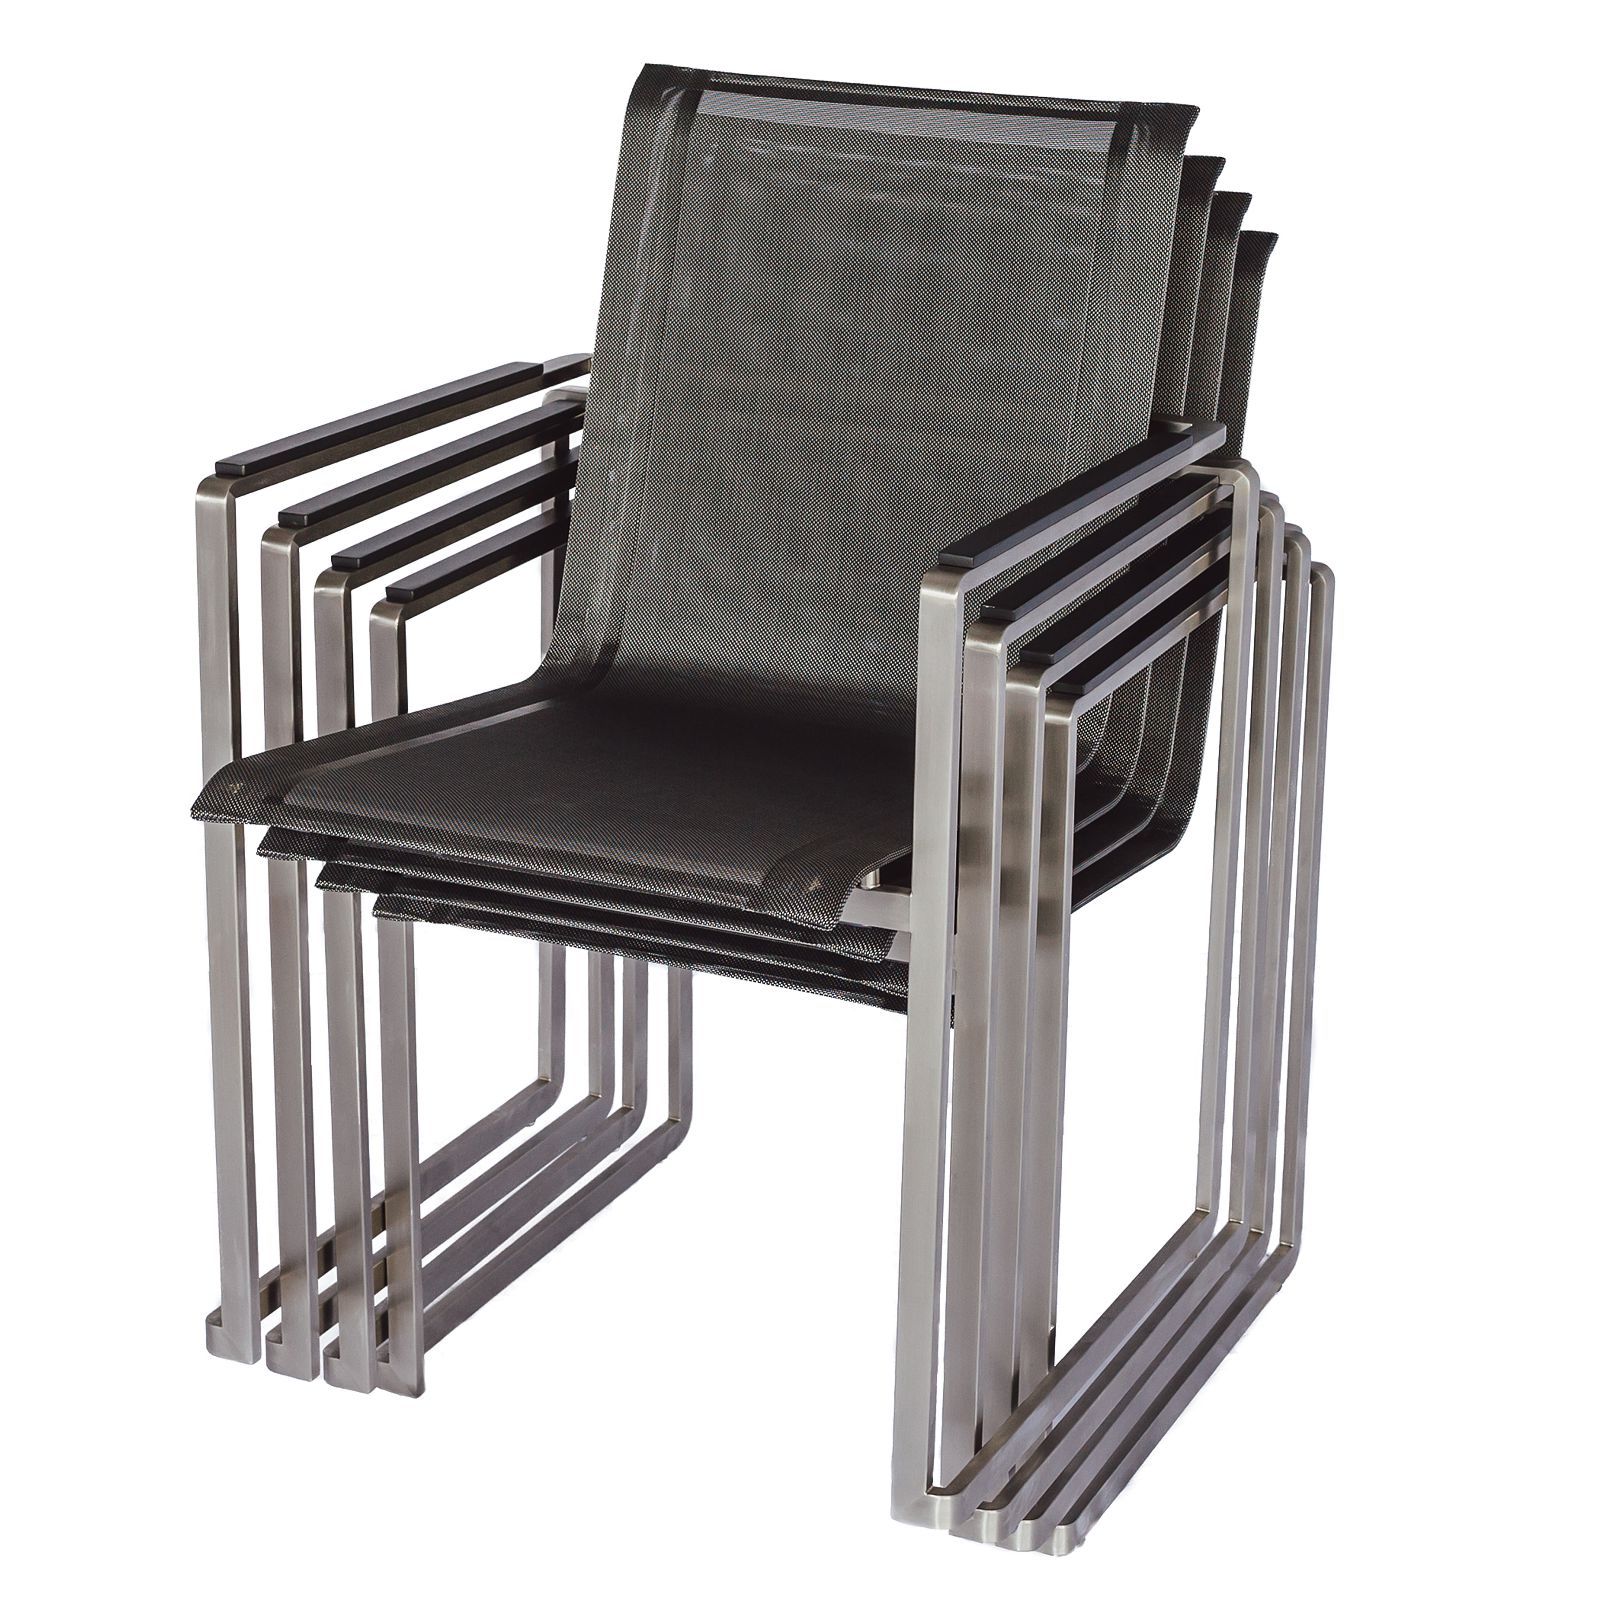 Ensemble de meubles de jardin : 4 chaises et 1 table en acier inoxydable et plateau de table en vitrocéramique